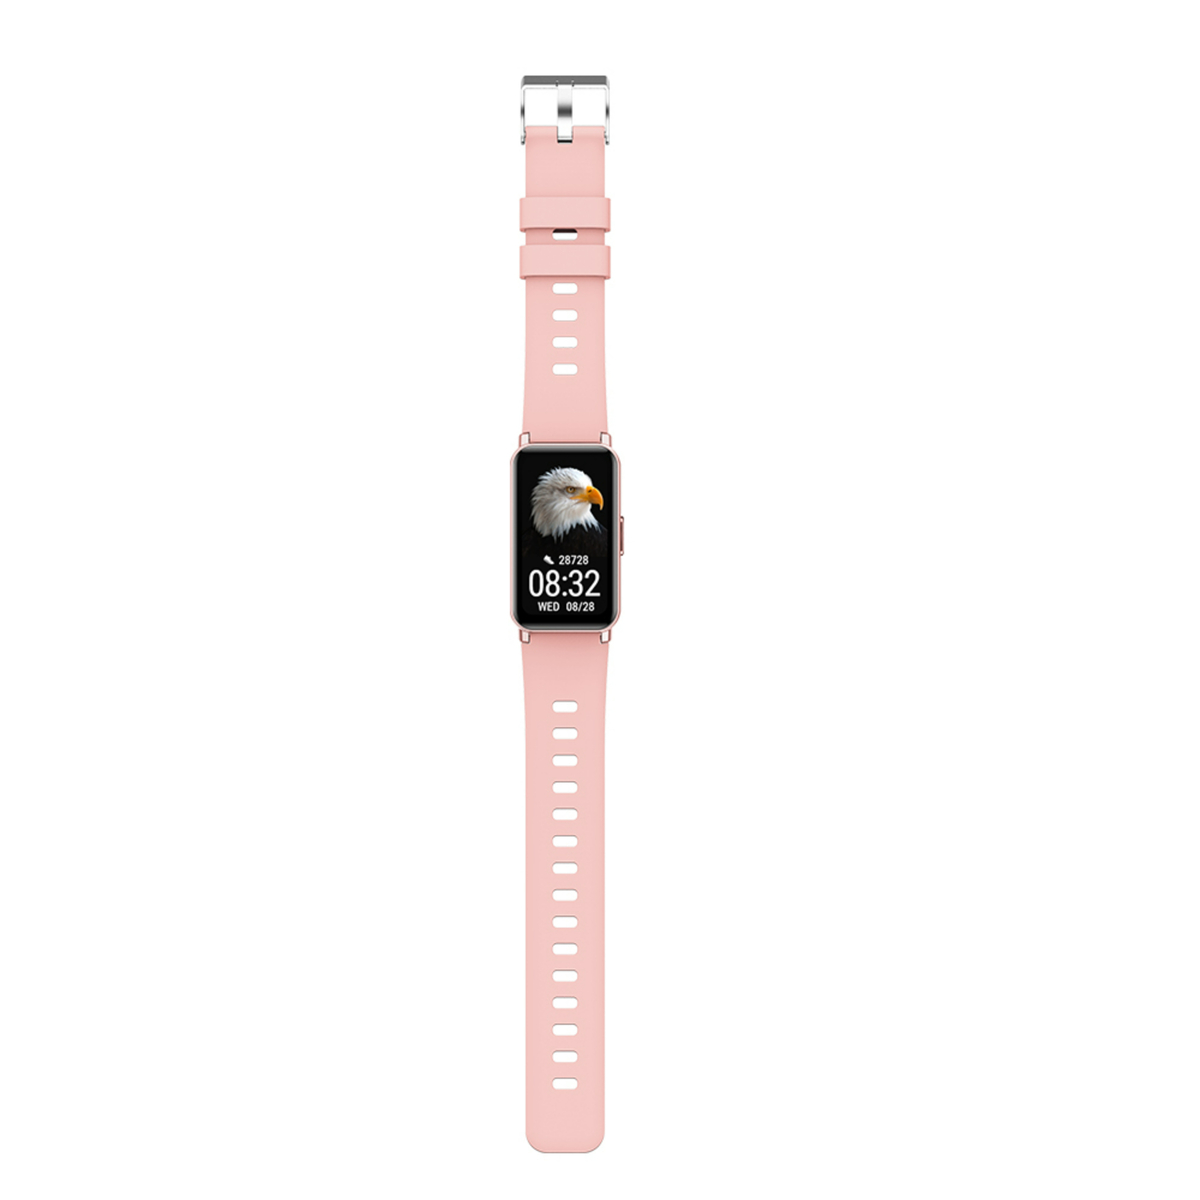 Ikon Bluetooth Smart Band, 1.45", Pink, IK-WSBB9